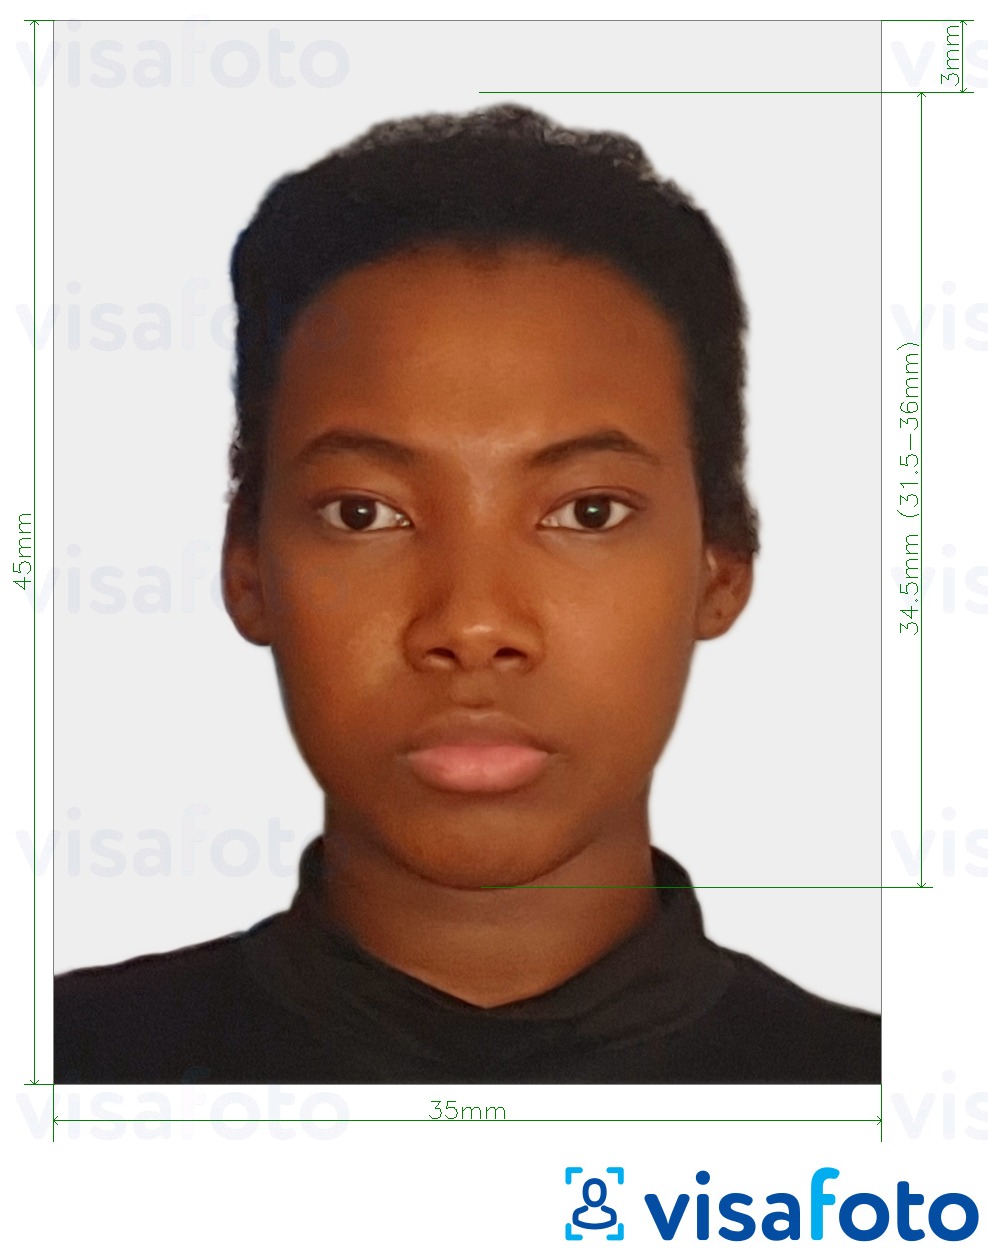 Příklad fotografie Zimbabwe pas 3,5 x 4,5 cm (35x45 mm) s přesnou specifikací velikosti